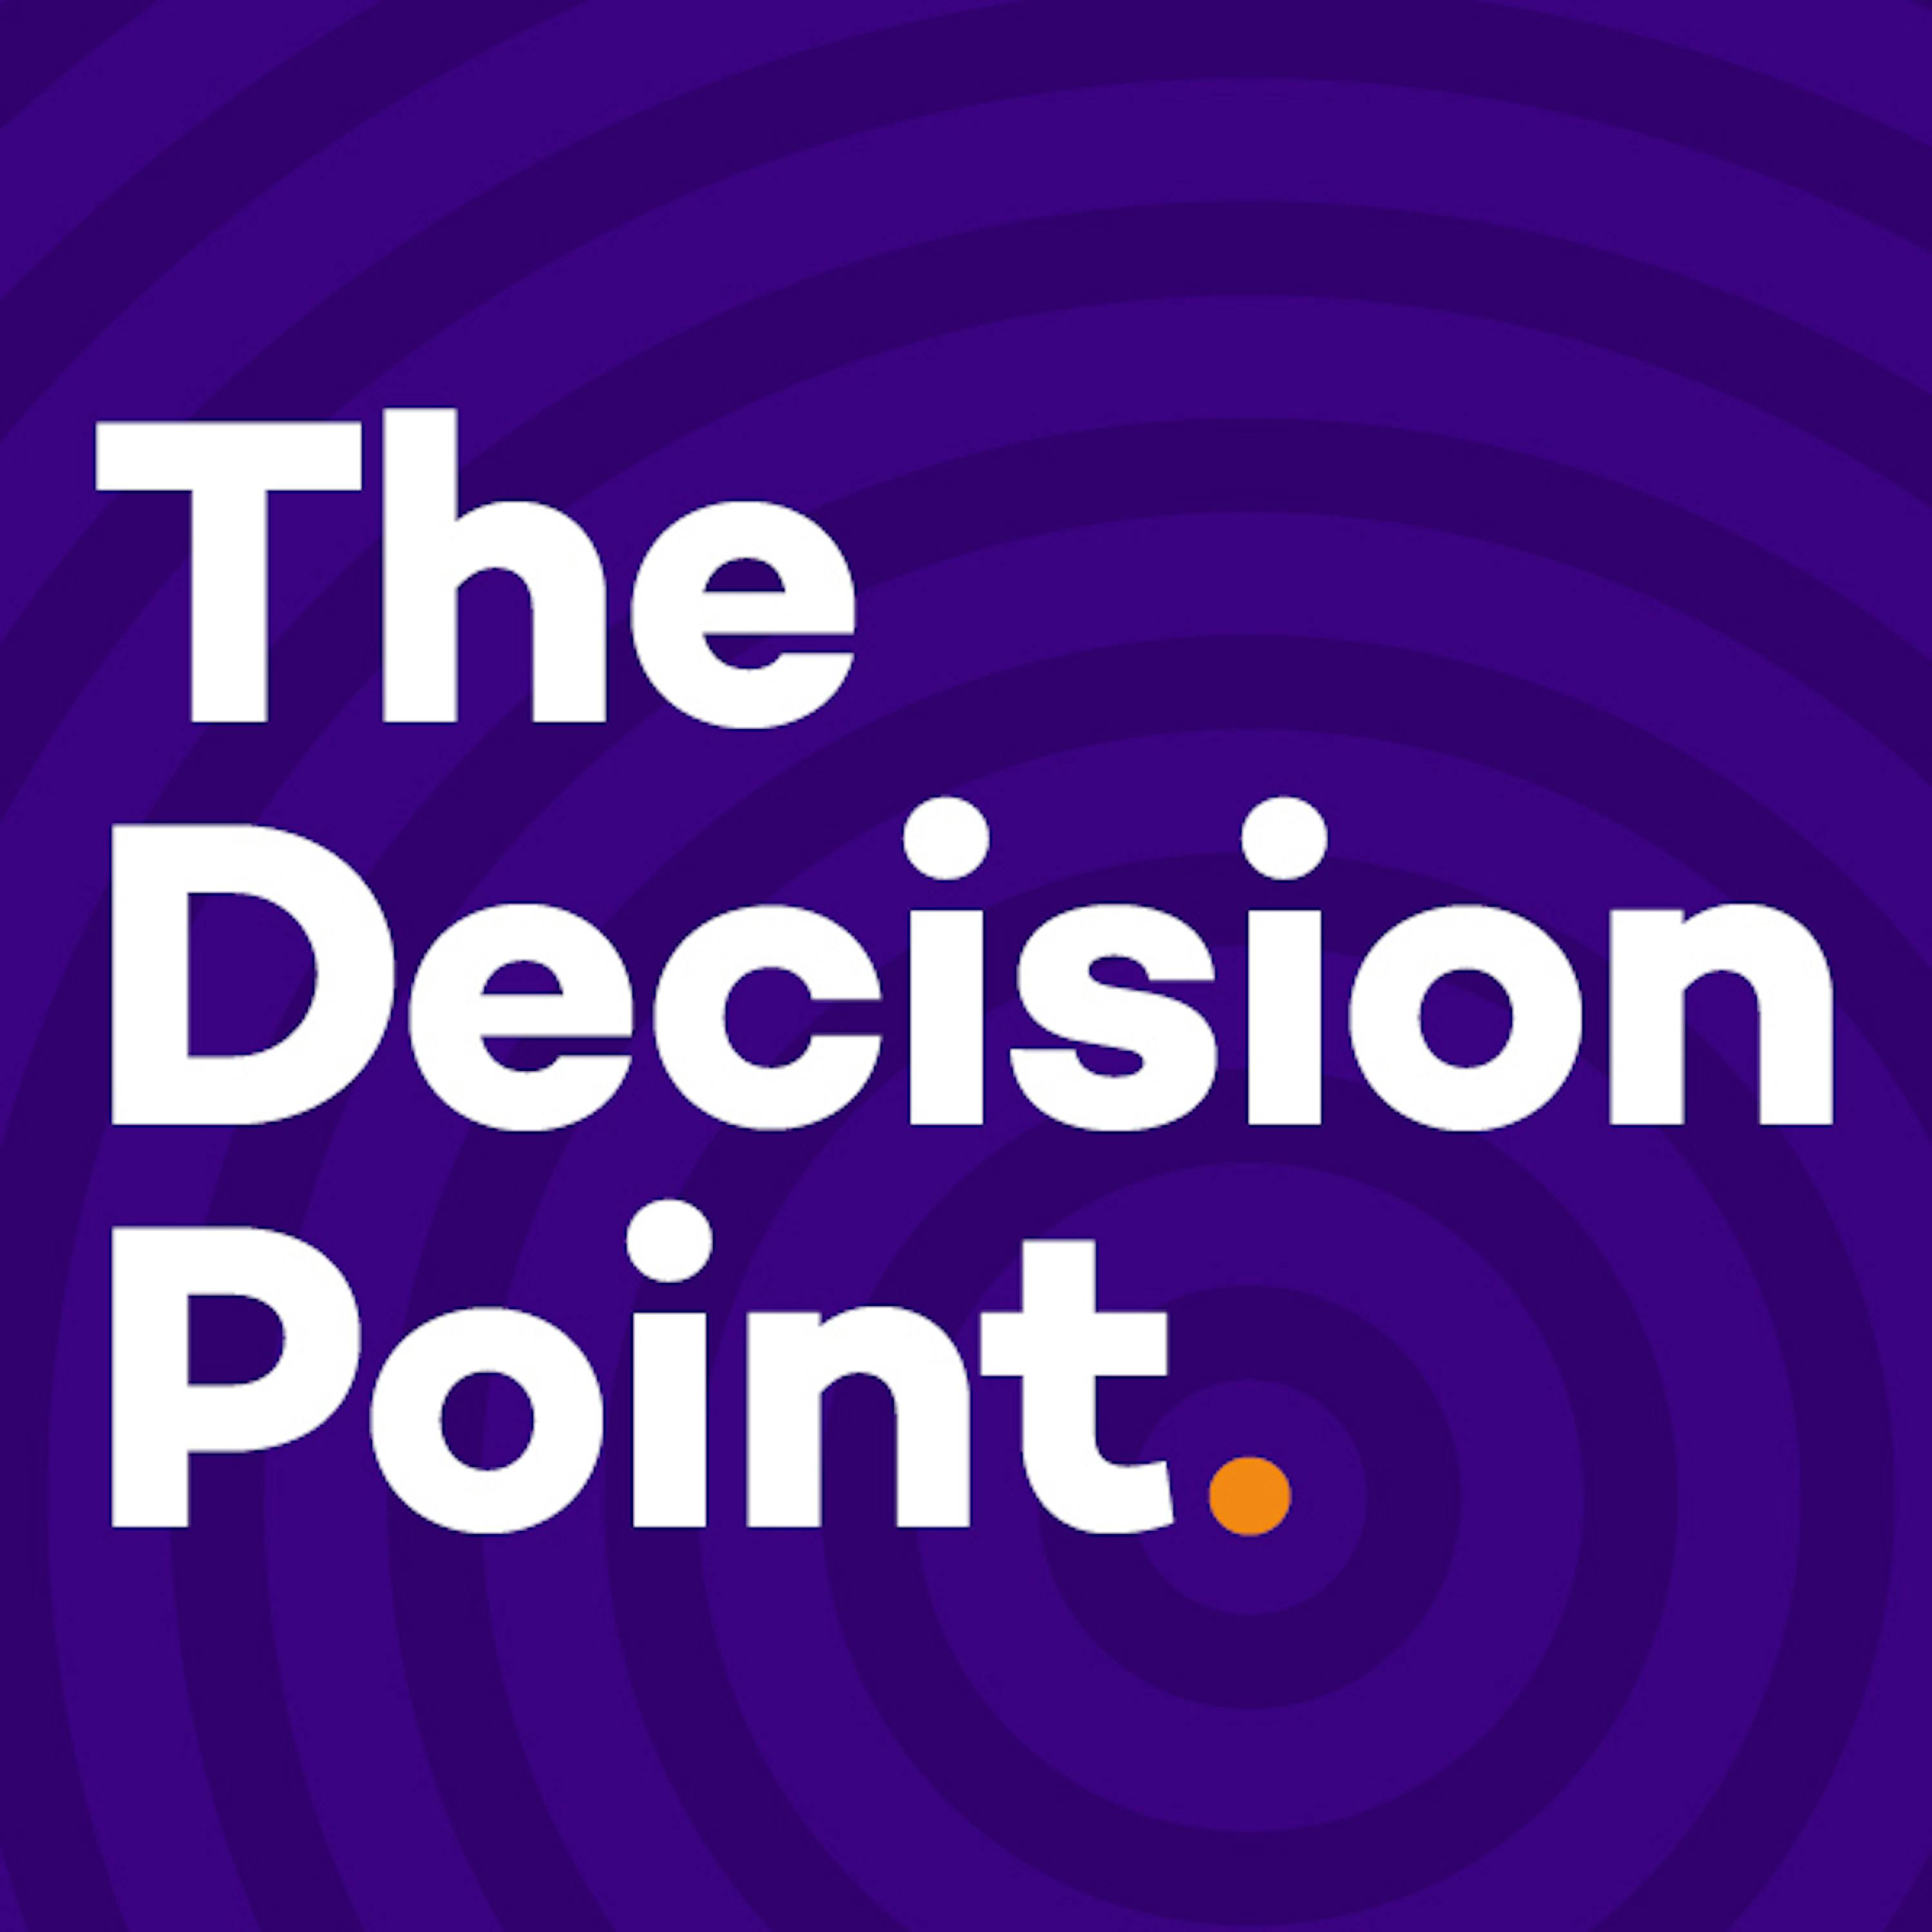 Decision Point - Derrick Henry Trade Deadline Hero